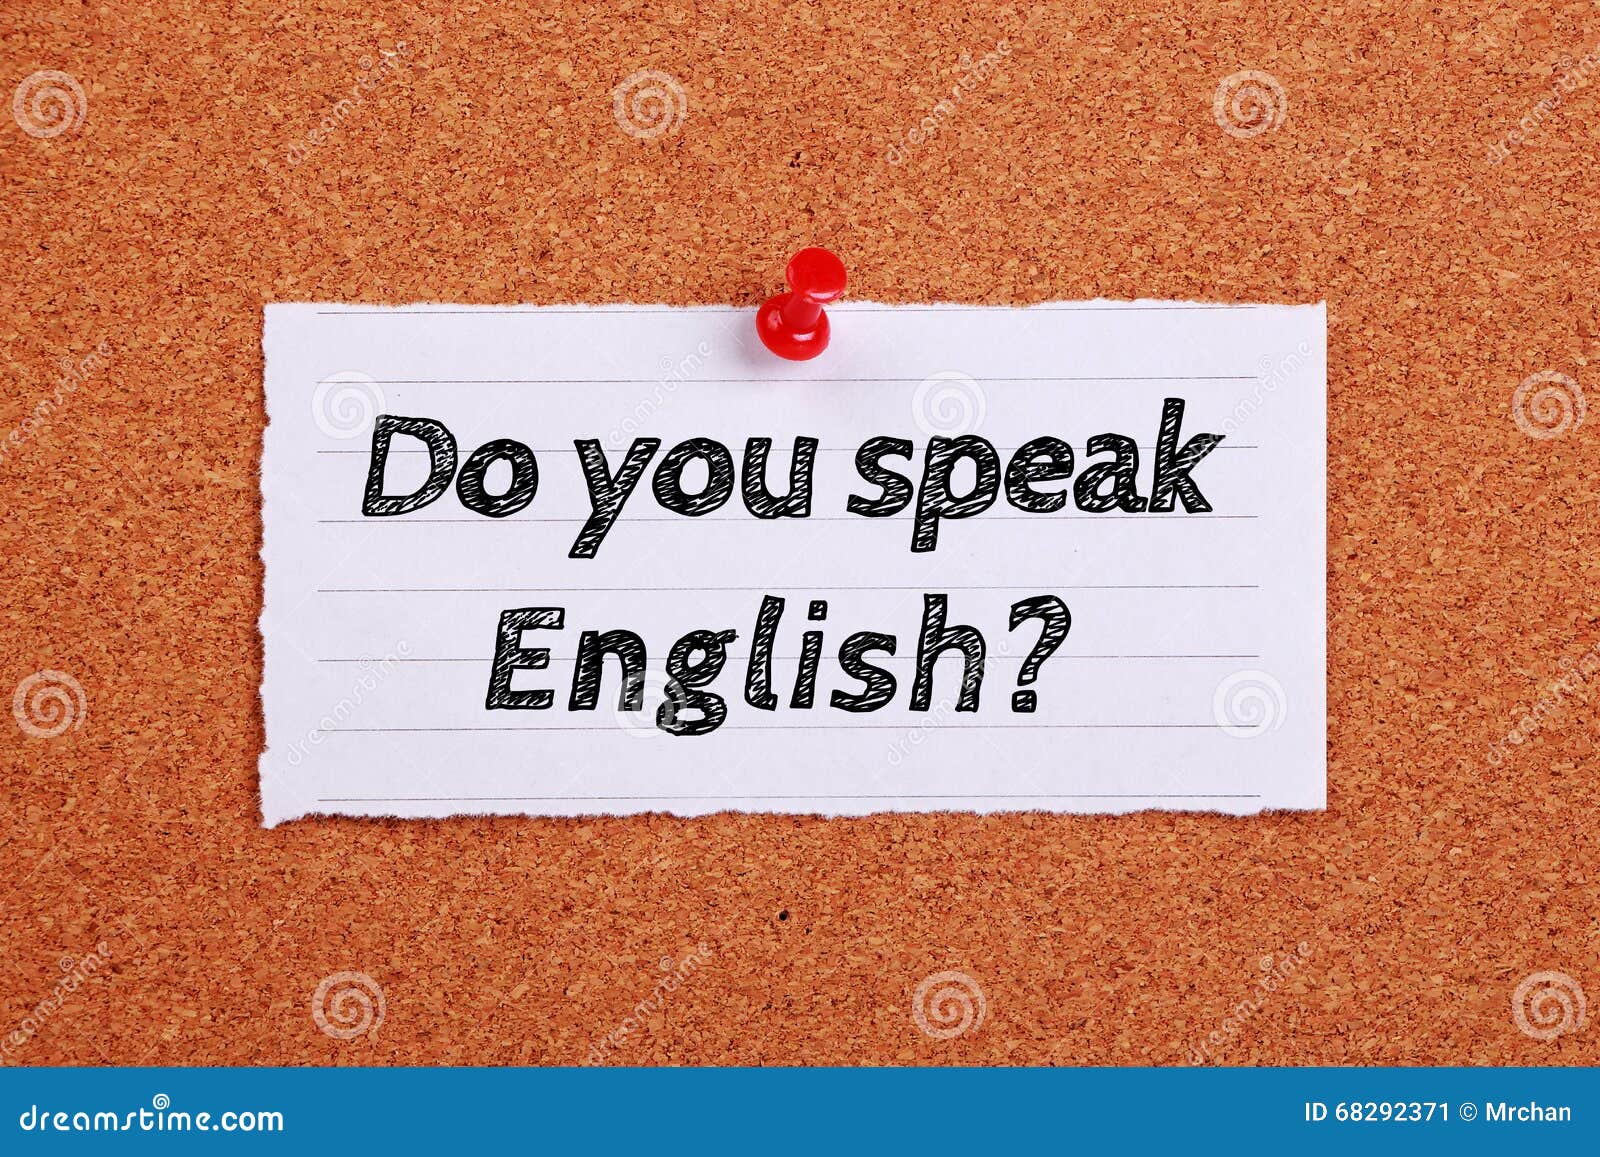 Do you speak english with me. Speak English. Был you speak English. Do you speak English конечно. Do you speak English картинки.